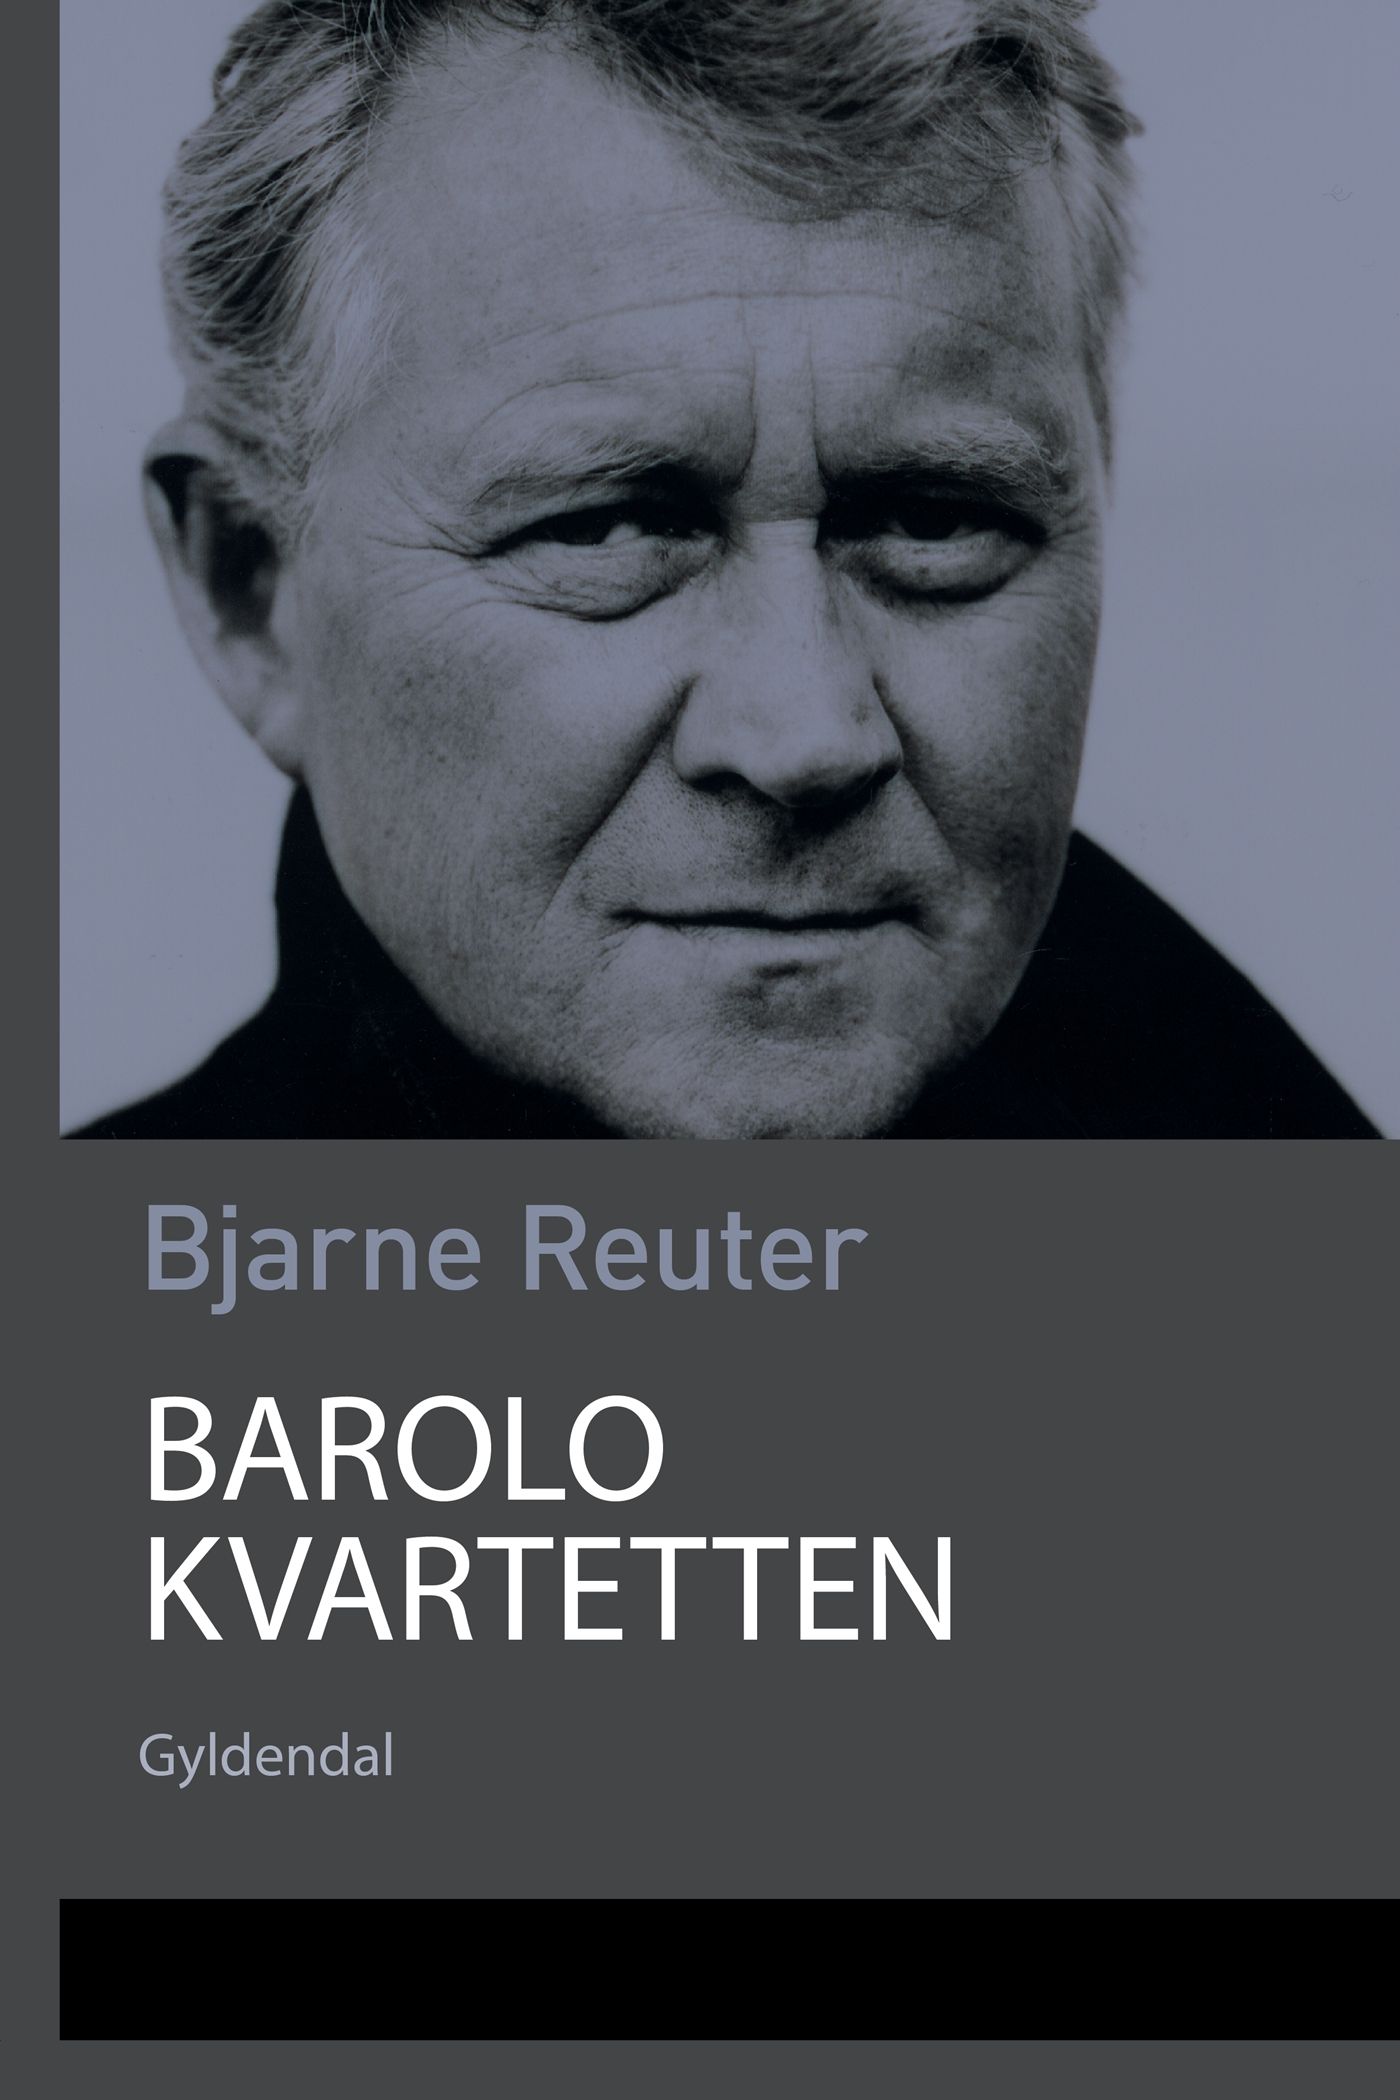 Barolo Kvartetten, e-bok av Bjarne Reuter